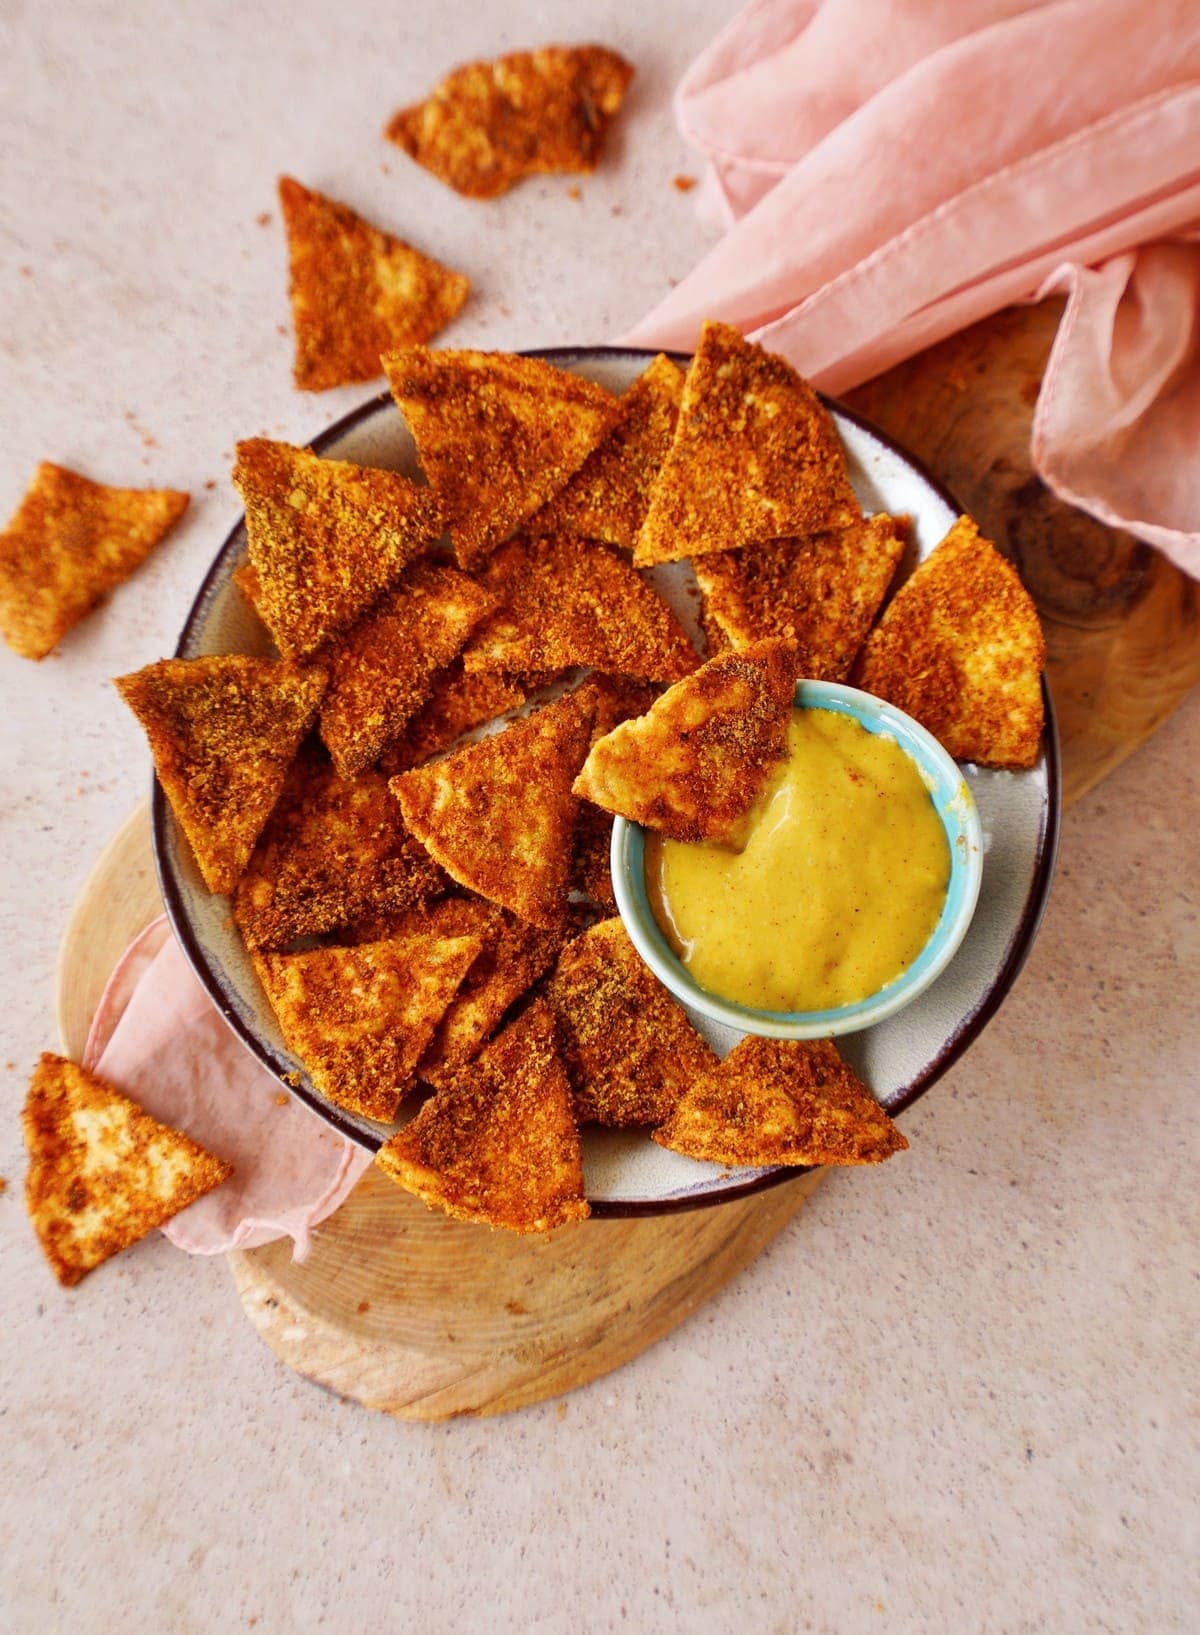 Selbstgemachte Doritos (Tortilla Chips) in einer Schüssel mit Käsedip